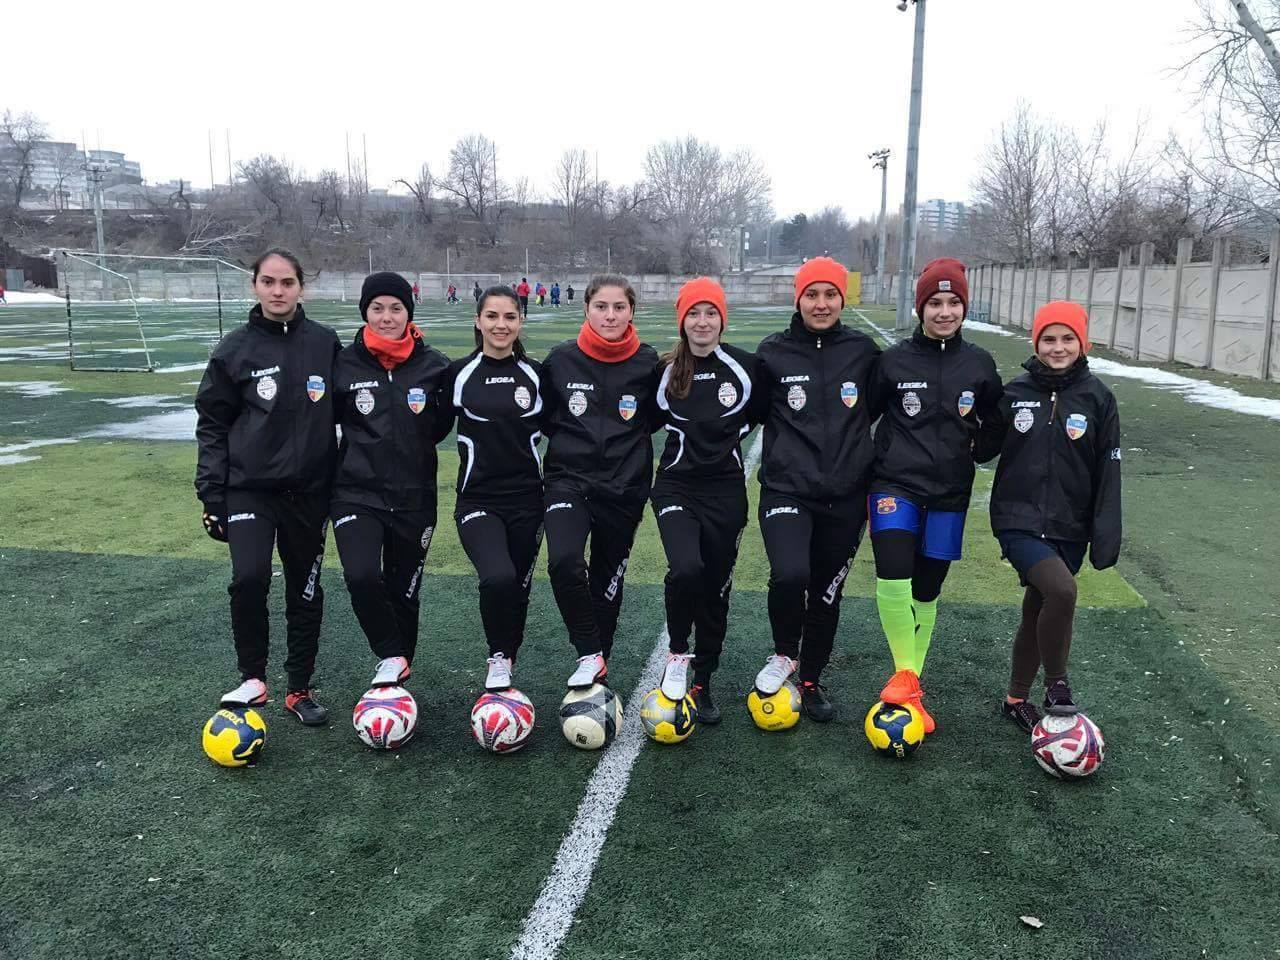 Echipa fotbal feminin Galati